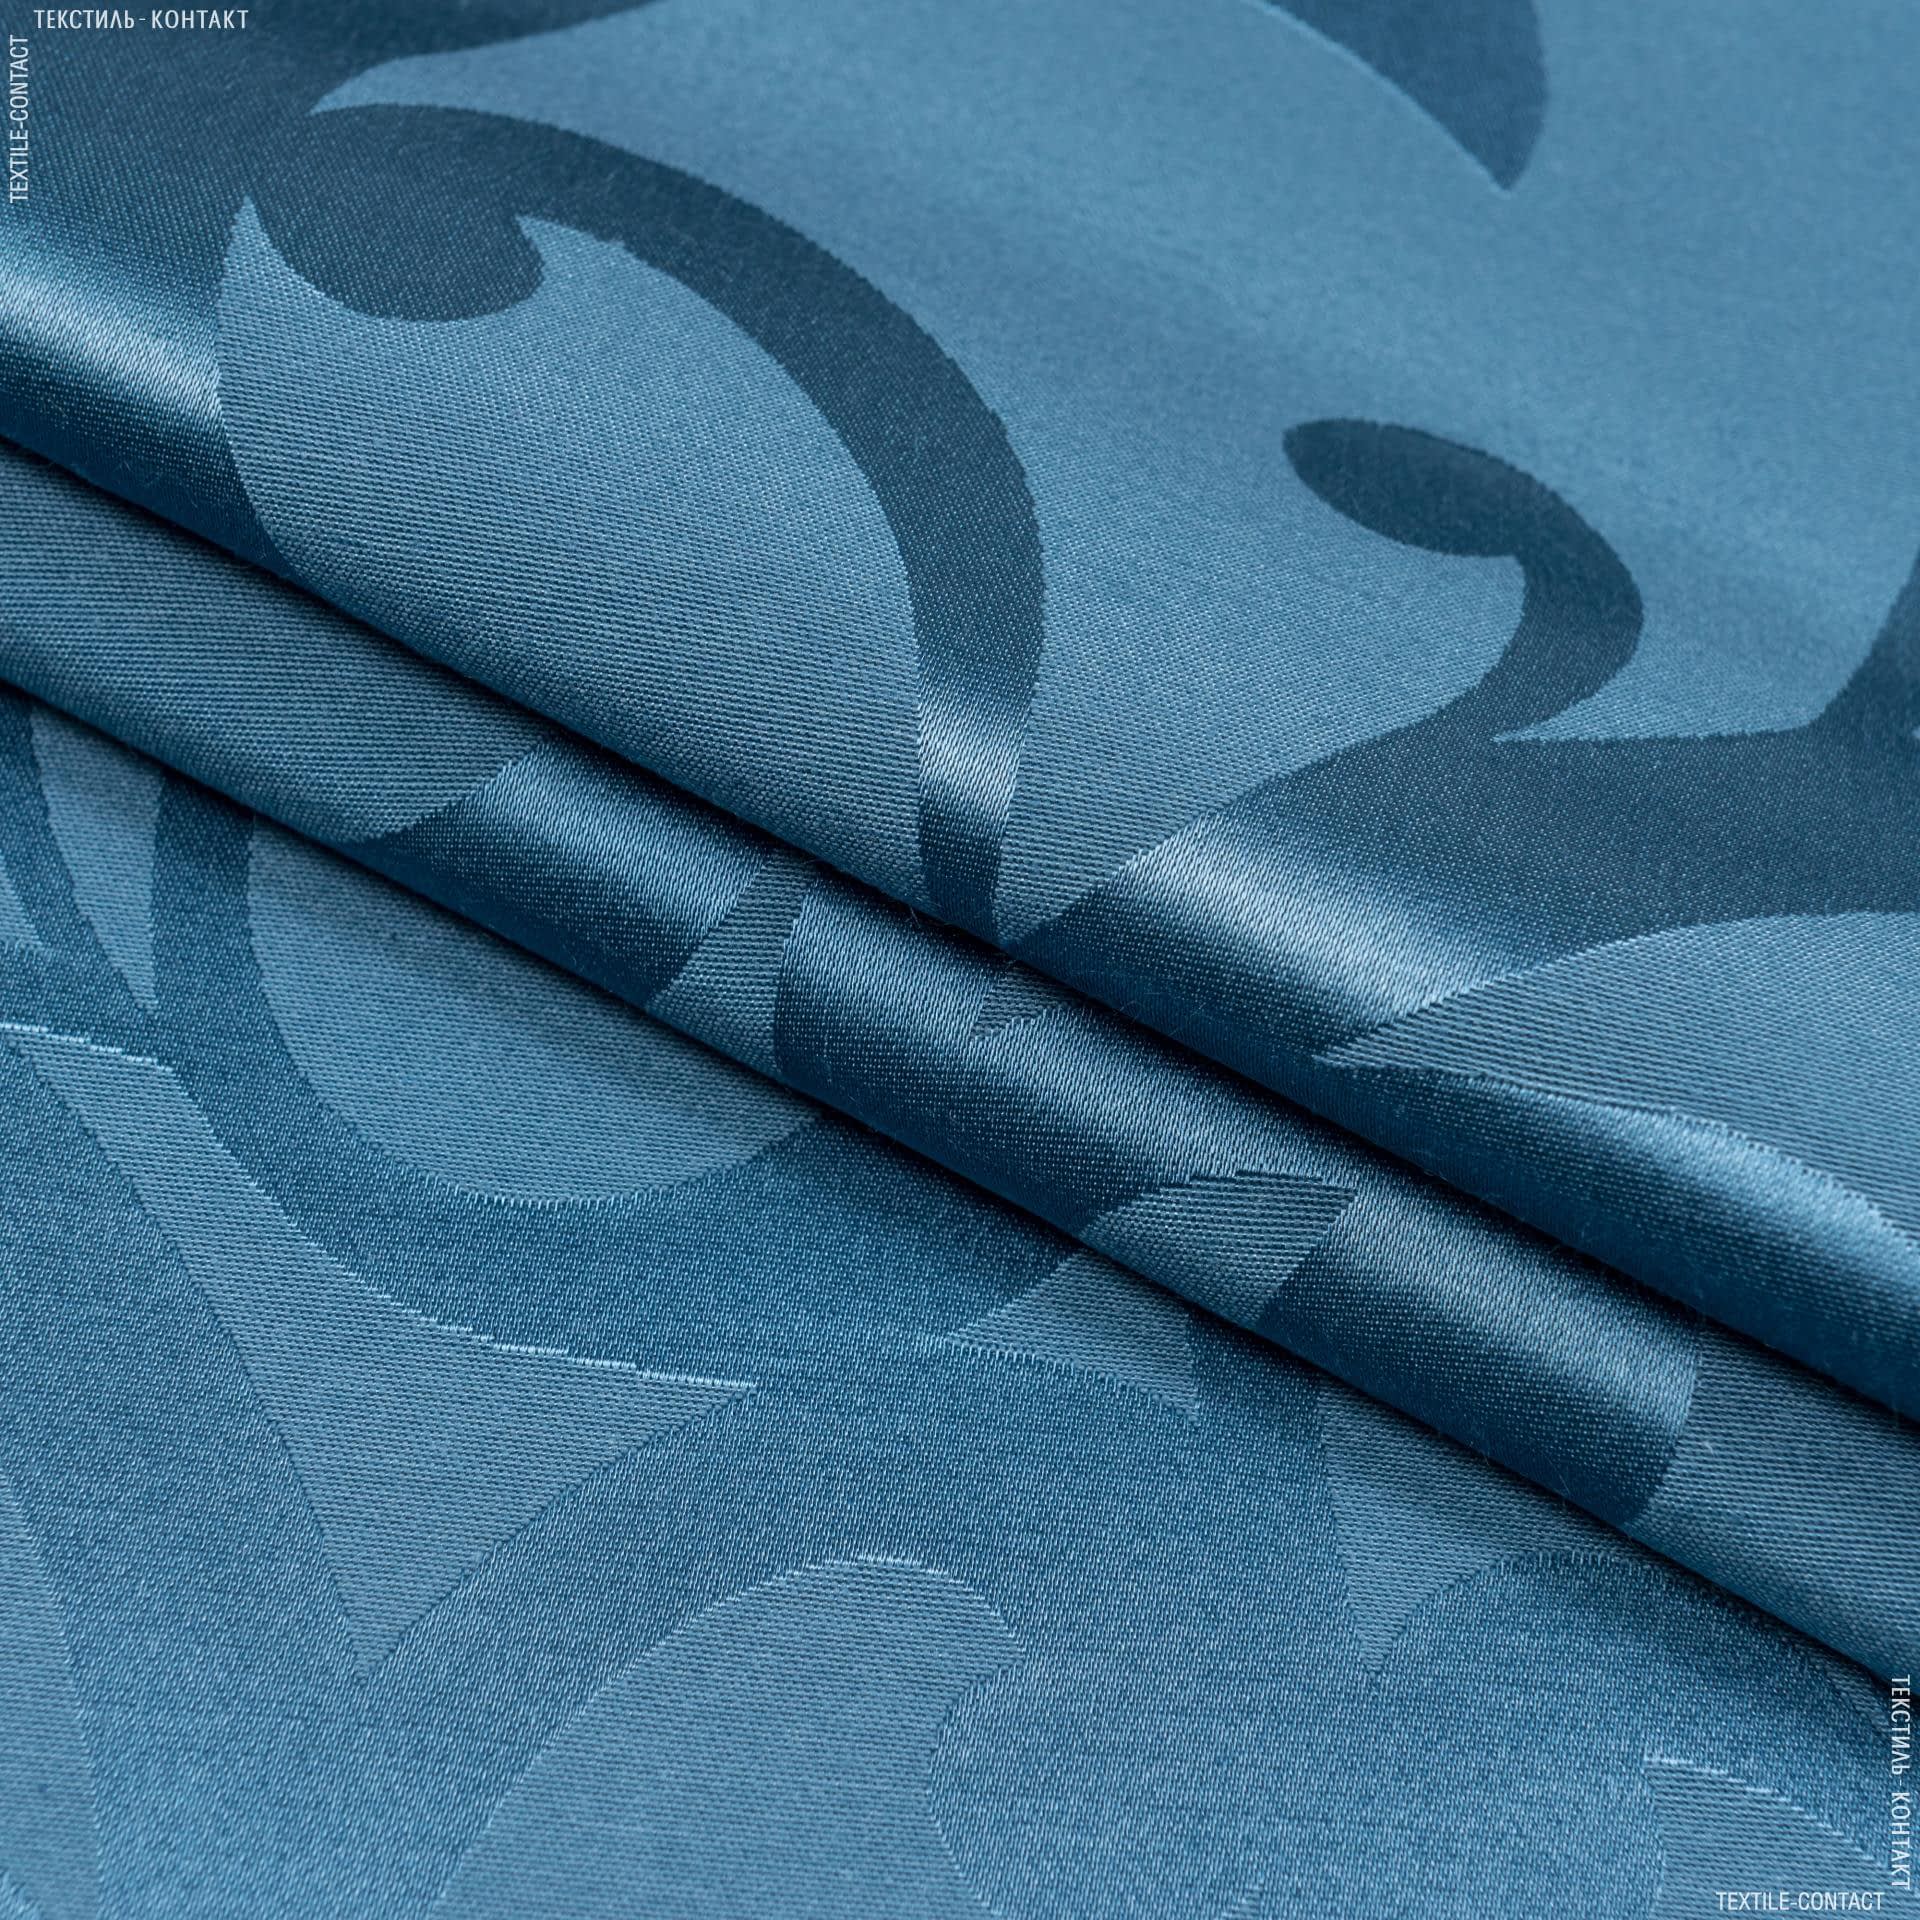 Тканини для скатертин - Тканина з акриловим просоченням ресінадо/resinado т.блакитний